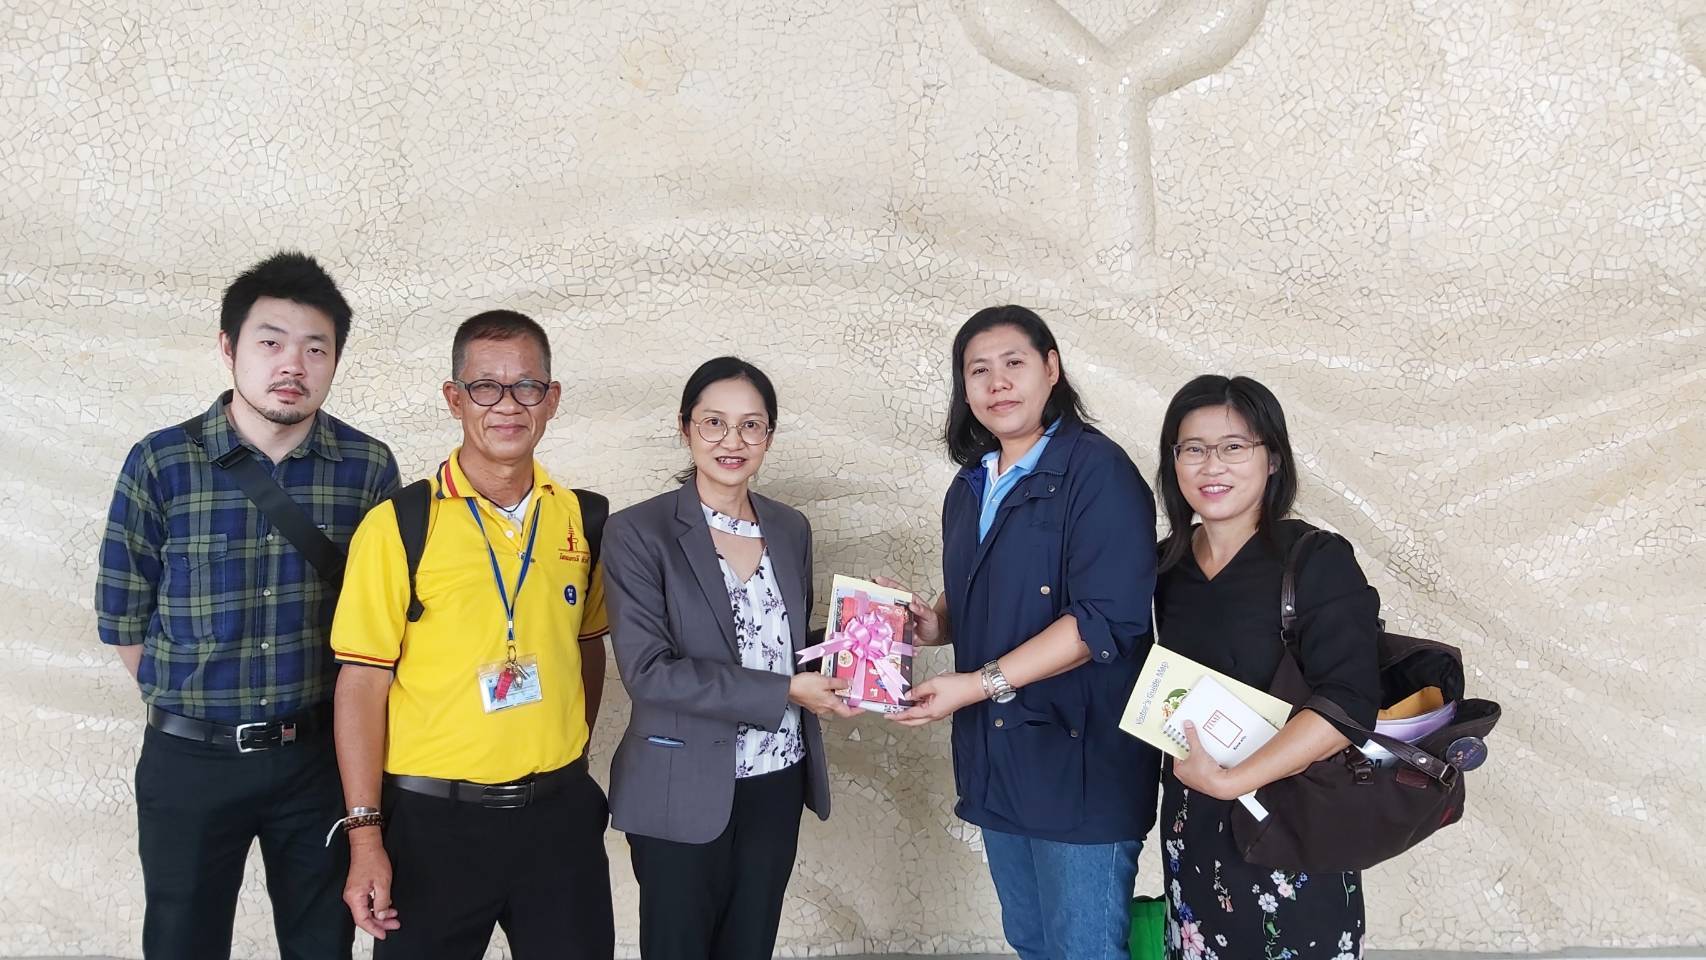 การท่องเที่ยวแห่งประเทศไทย สำนักงานกรุงเทพมหานคร ให้การต้อนรับและอำนวยความสะดวกคณะนักท่องเที่ยวกลุ่มเยาวชนจากโรงเรียนสาธิต จุฬาลงกรณ์ มหาวิทยาลัย